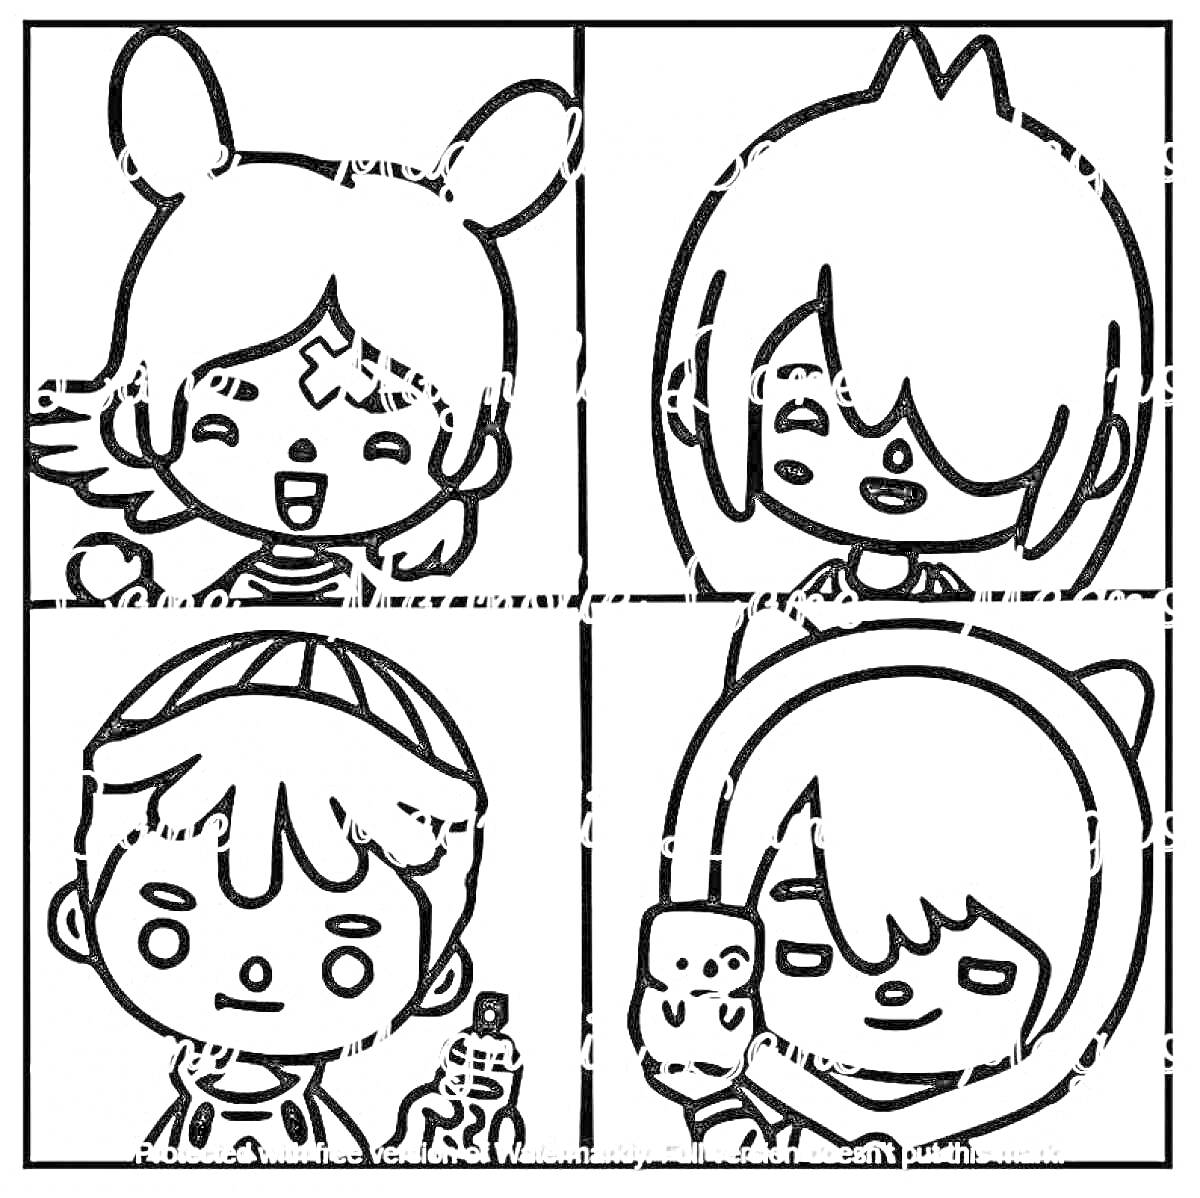 Раскраска Четыре персонажа Тока Бока: девочка с ушками, мальчик с короткой прической, мальчик с бейсболкой, девочка с капюшоном и игрушкой в руке